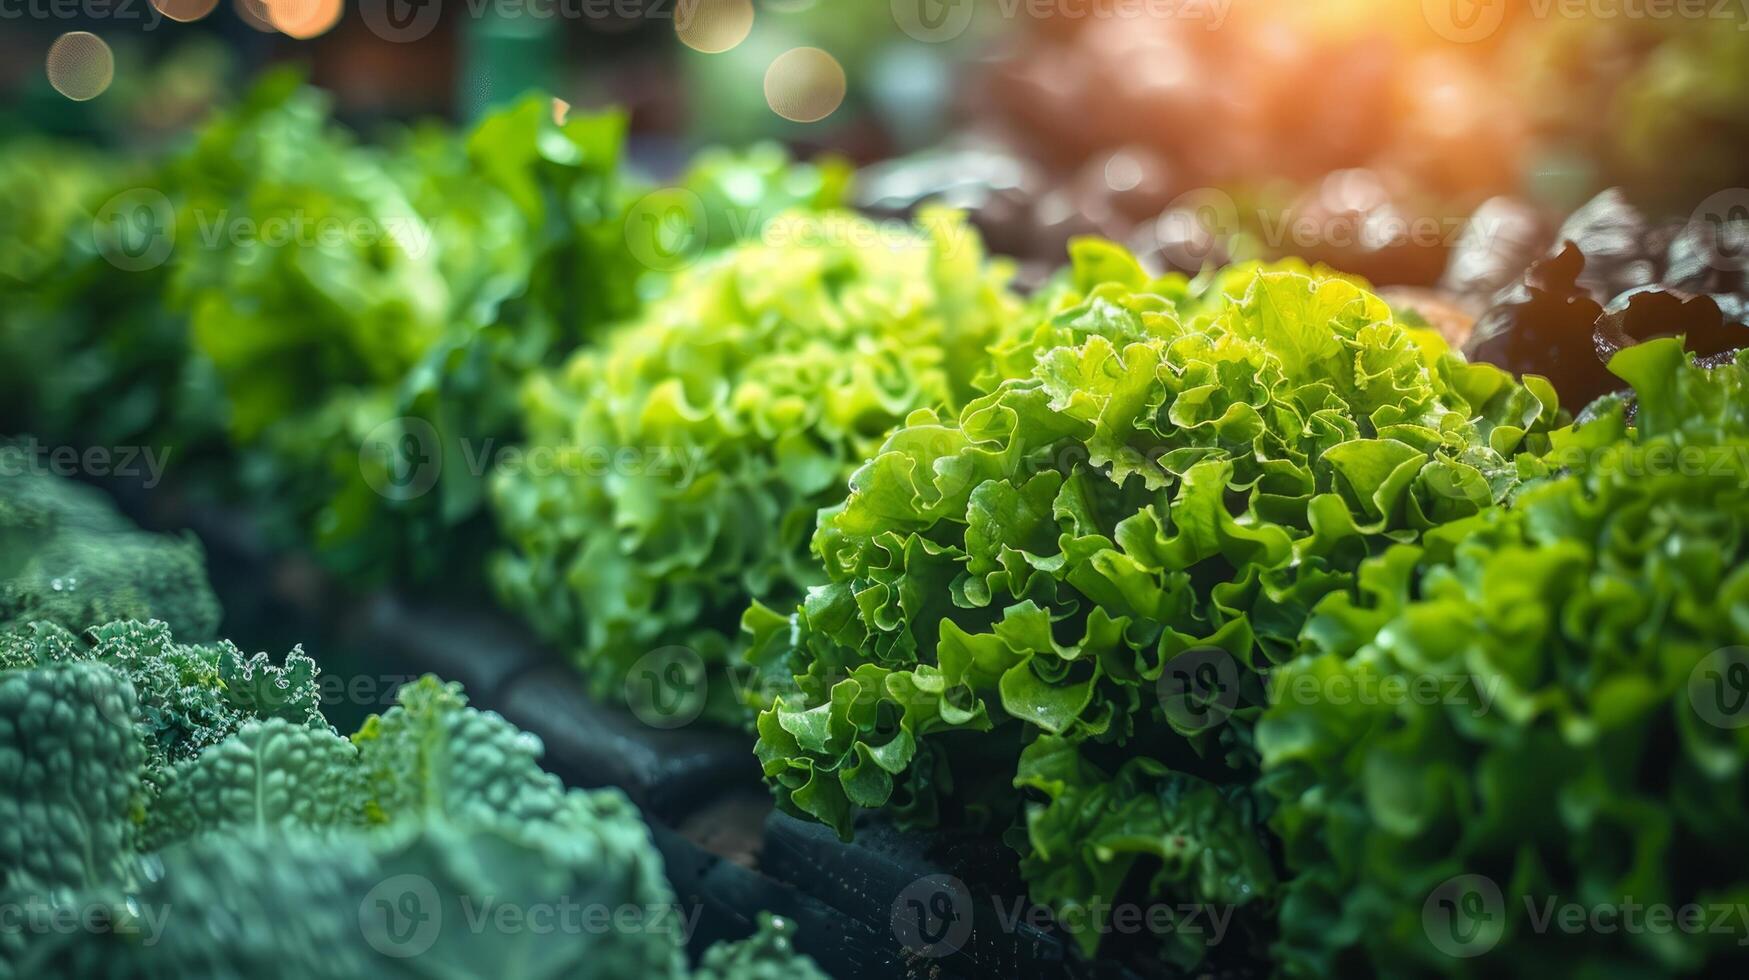 fresco verde alface folhas crescendo dentro vegetal jardim com natural luz solar. conceito do saudável orgânico agricultura, nutrição e sustentável agricultura foto